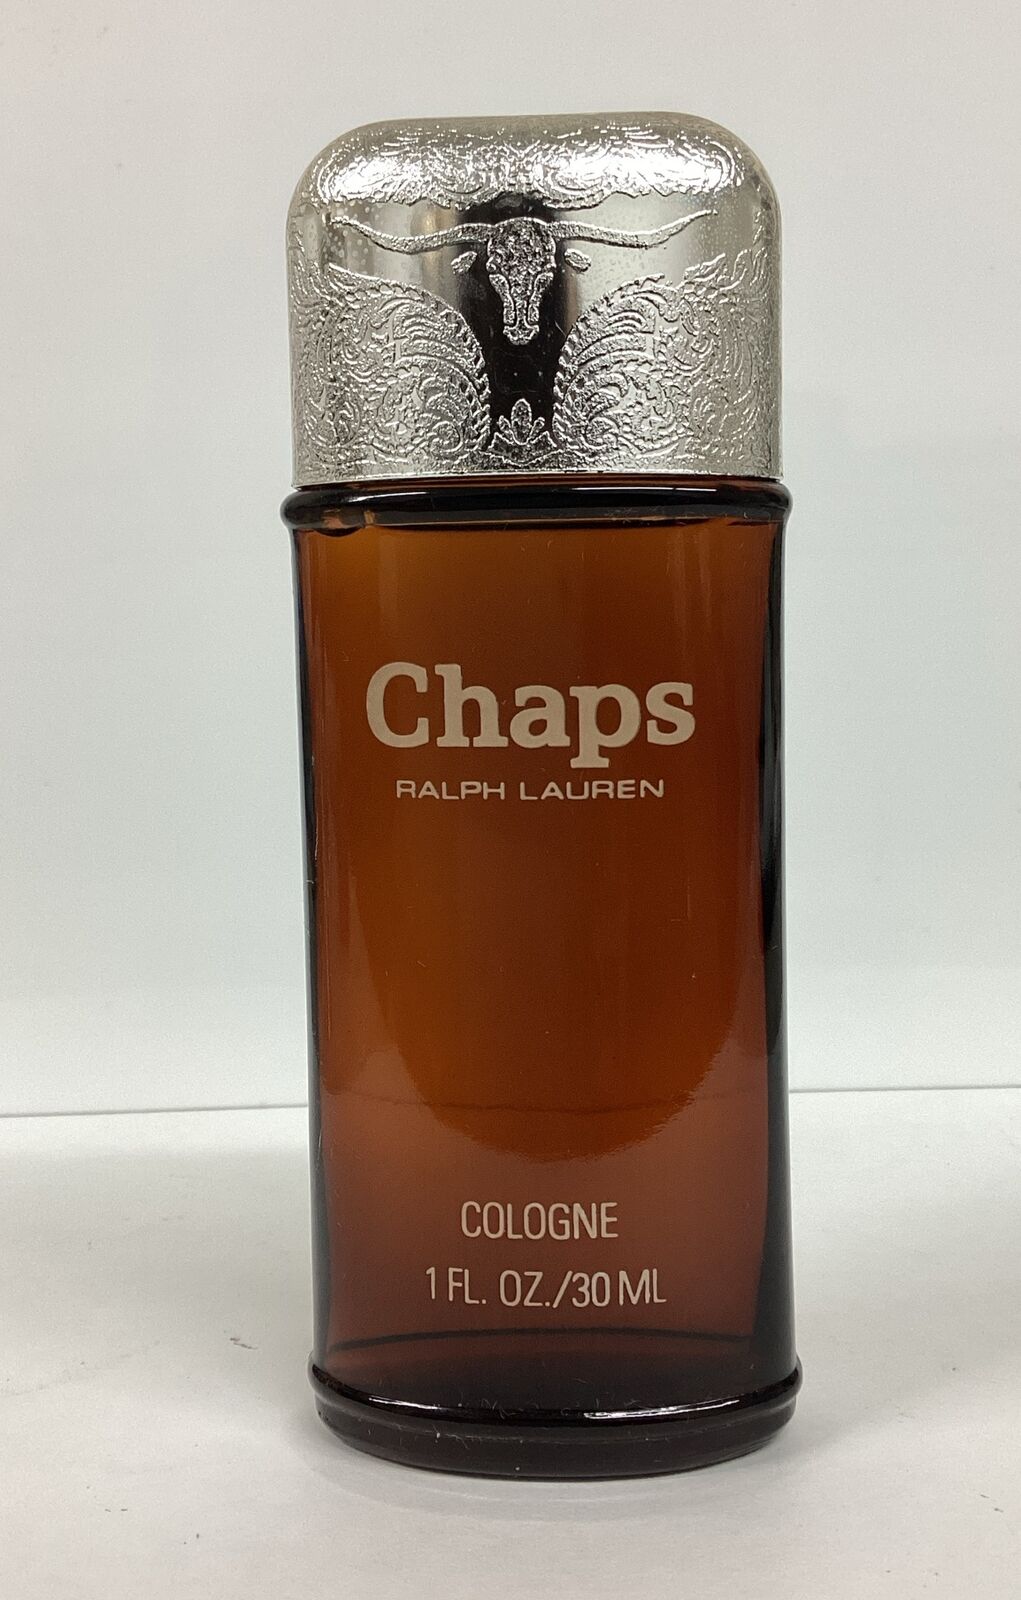 Ralph Lauren Chaps Cologne 1oz Splash Glass Bottle (VINTAGE) Read Description..